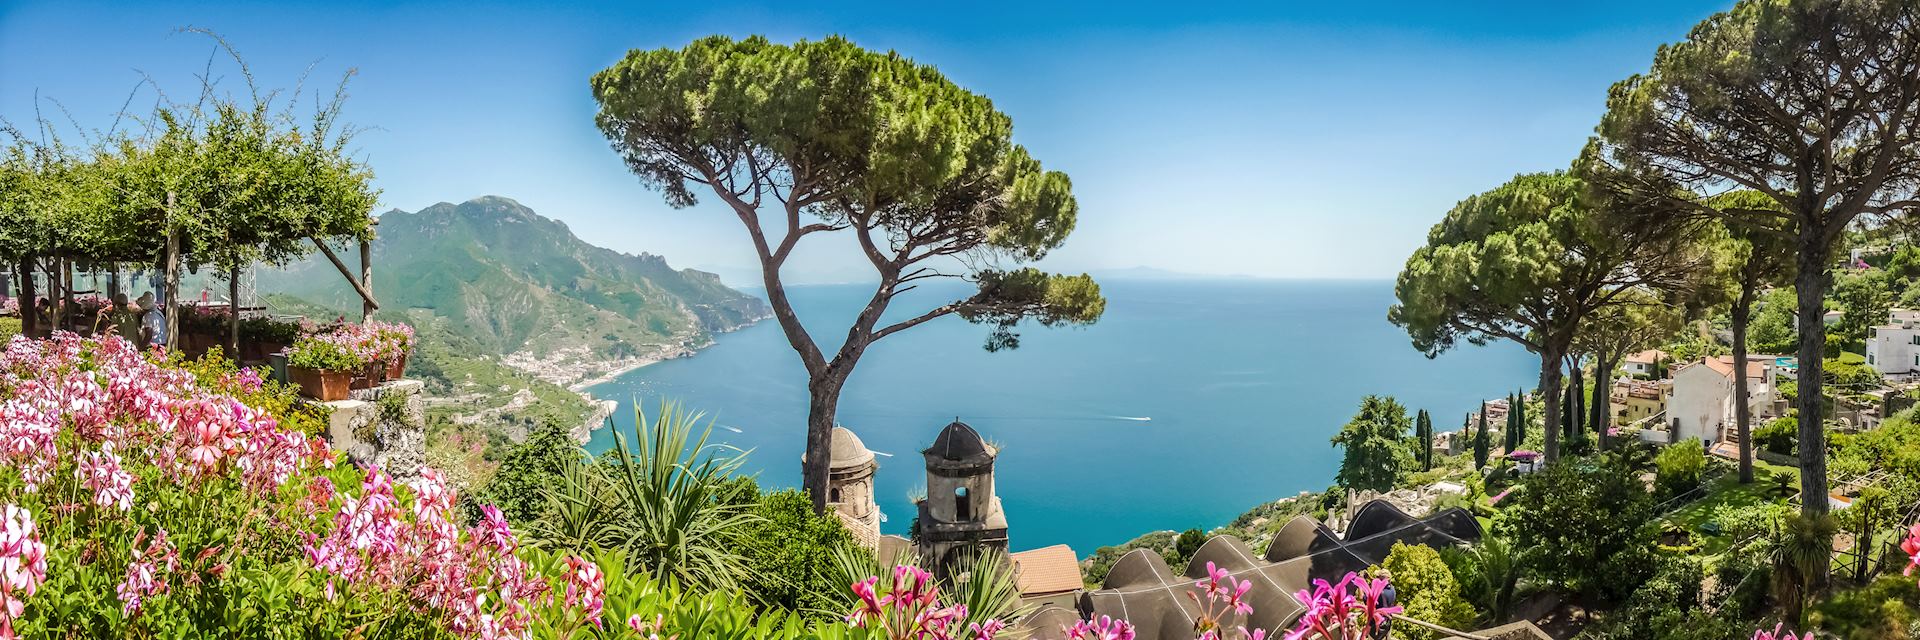 Amalfi Coast from Villa Rufolo gardens, Ravello